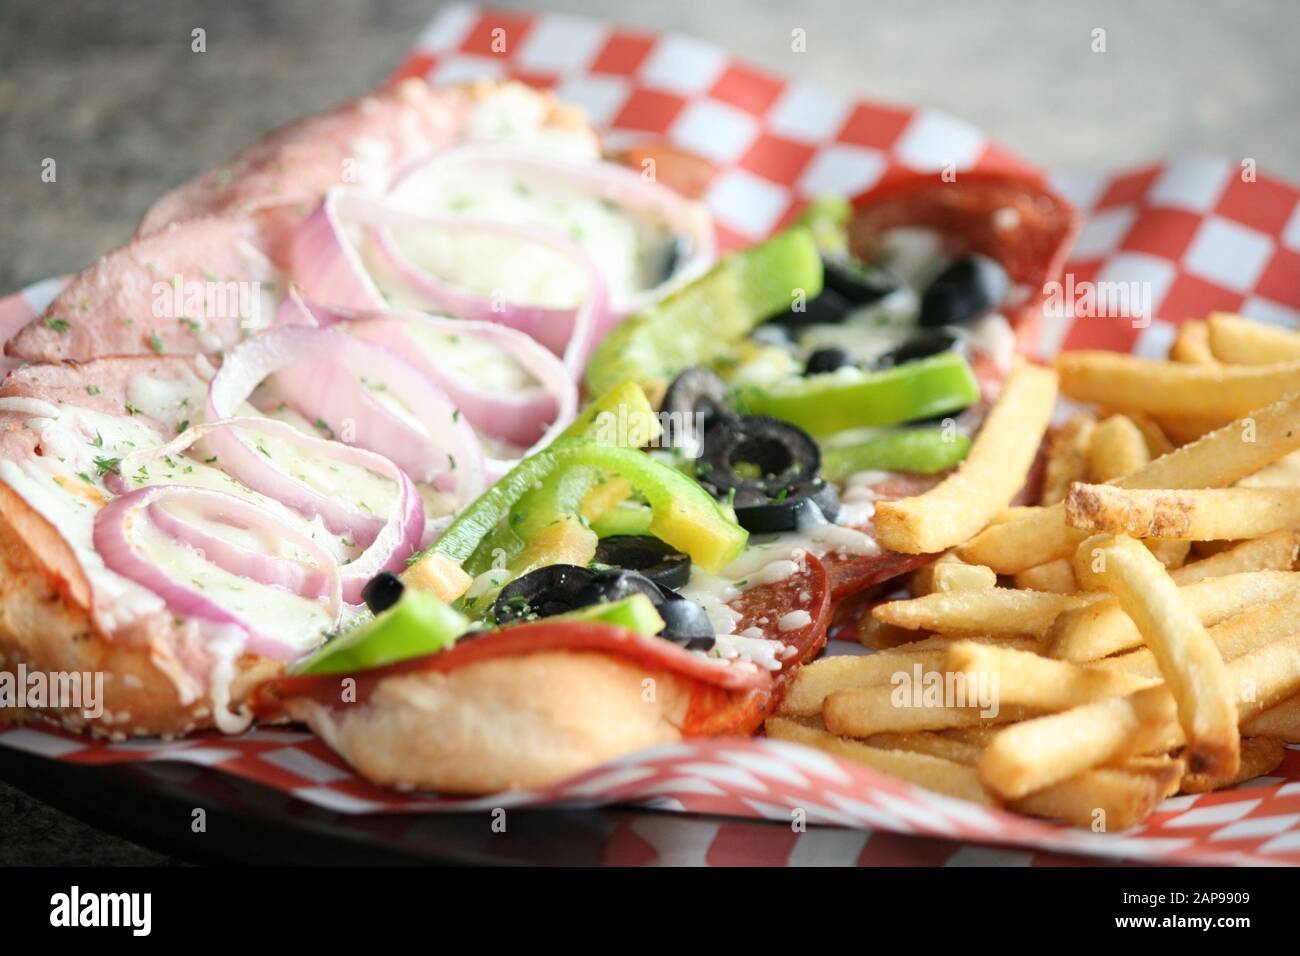 sándwich de charcutería tostado abierto con pimientos verdes, aceitunas negras, queso mozzarella fundido y patatas fritas en el pub o restaurante delicatessen Foto de stock